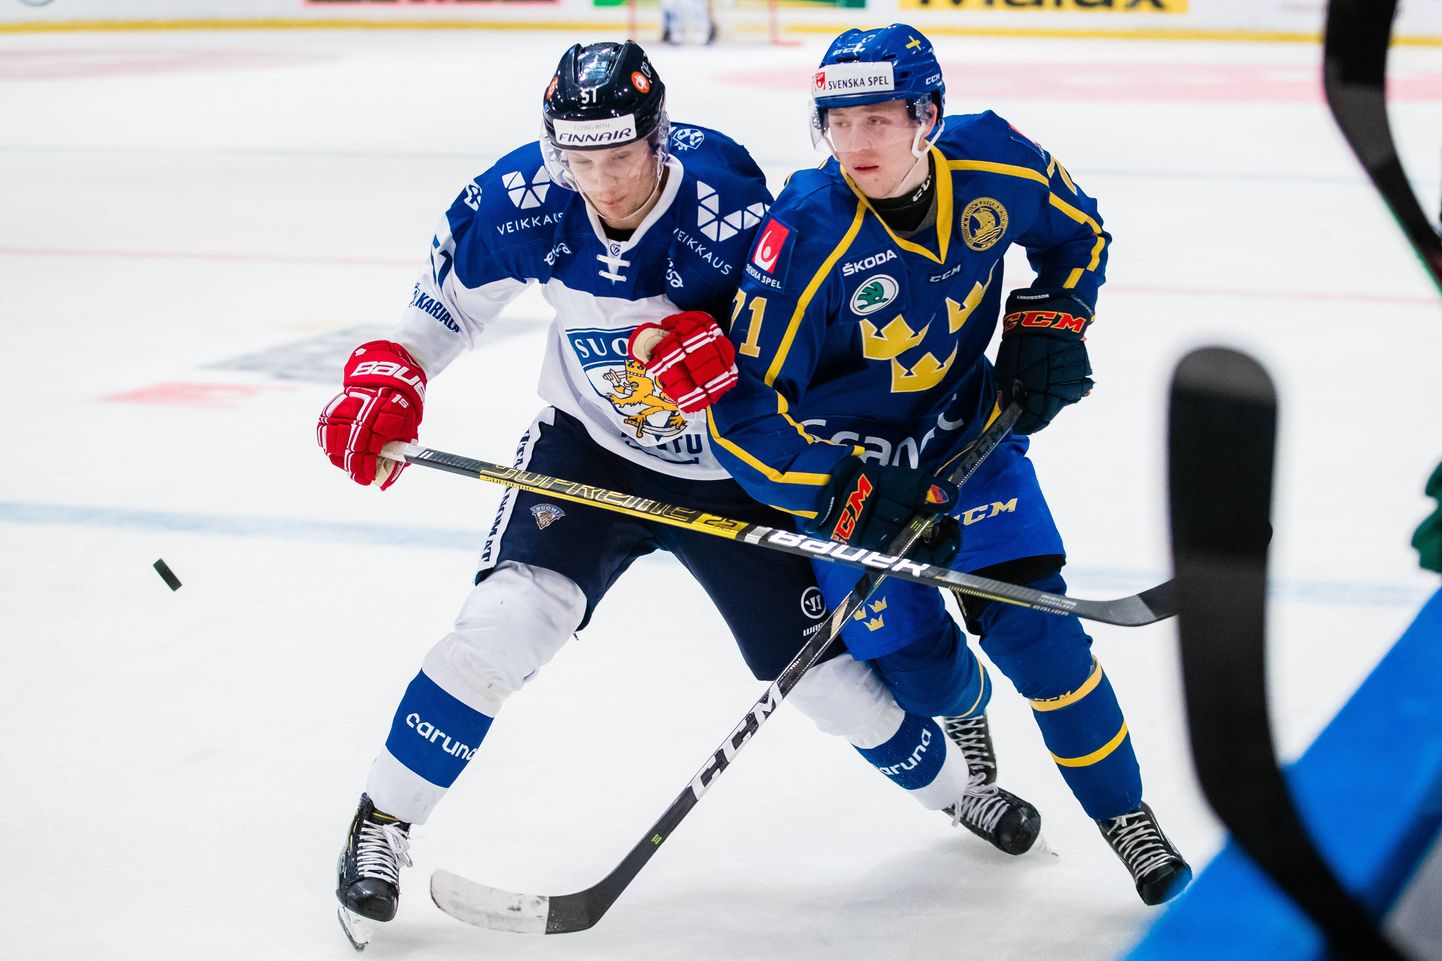 Soome jäähokimängija Kristian Näkyvä (vasakul) võitlemas Rootsi koondislase Jonathan Davidssoniga mullu veebruaris Soome-Rootsi kohtumises.